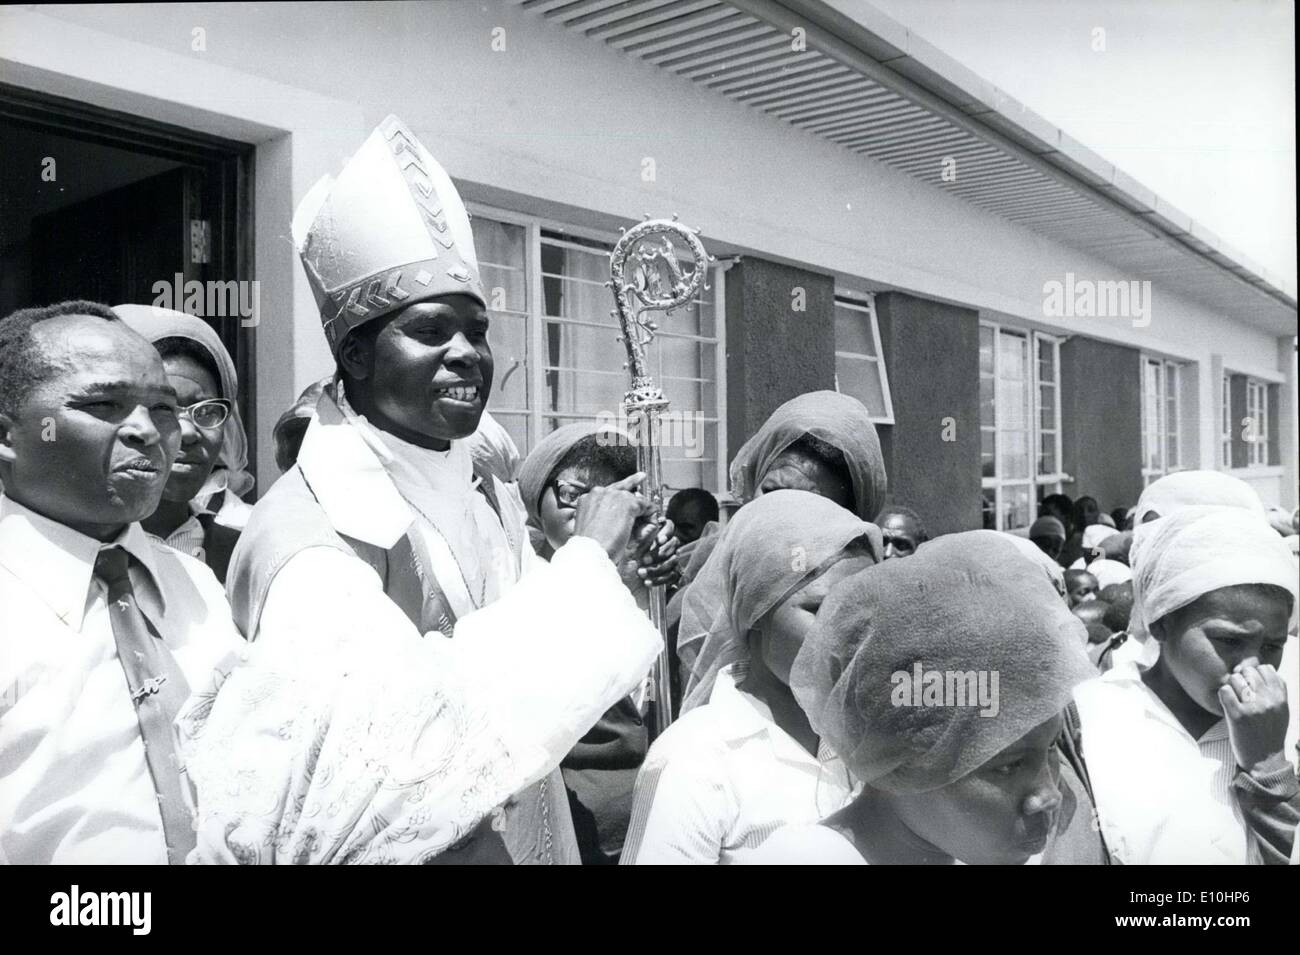 14 février 1973 - Après la messe, à l'extérieur dans le bain soleil africain, l'archevêque de Nans~i le cardinal Maurice Otunga sourit en guise de salutation Banque D'Images